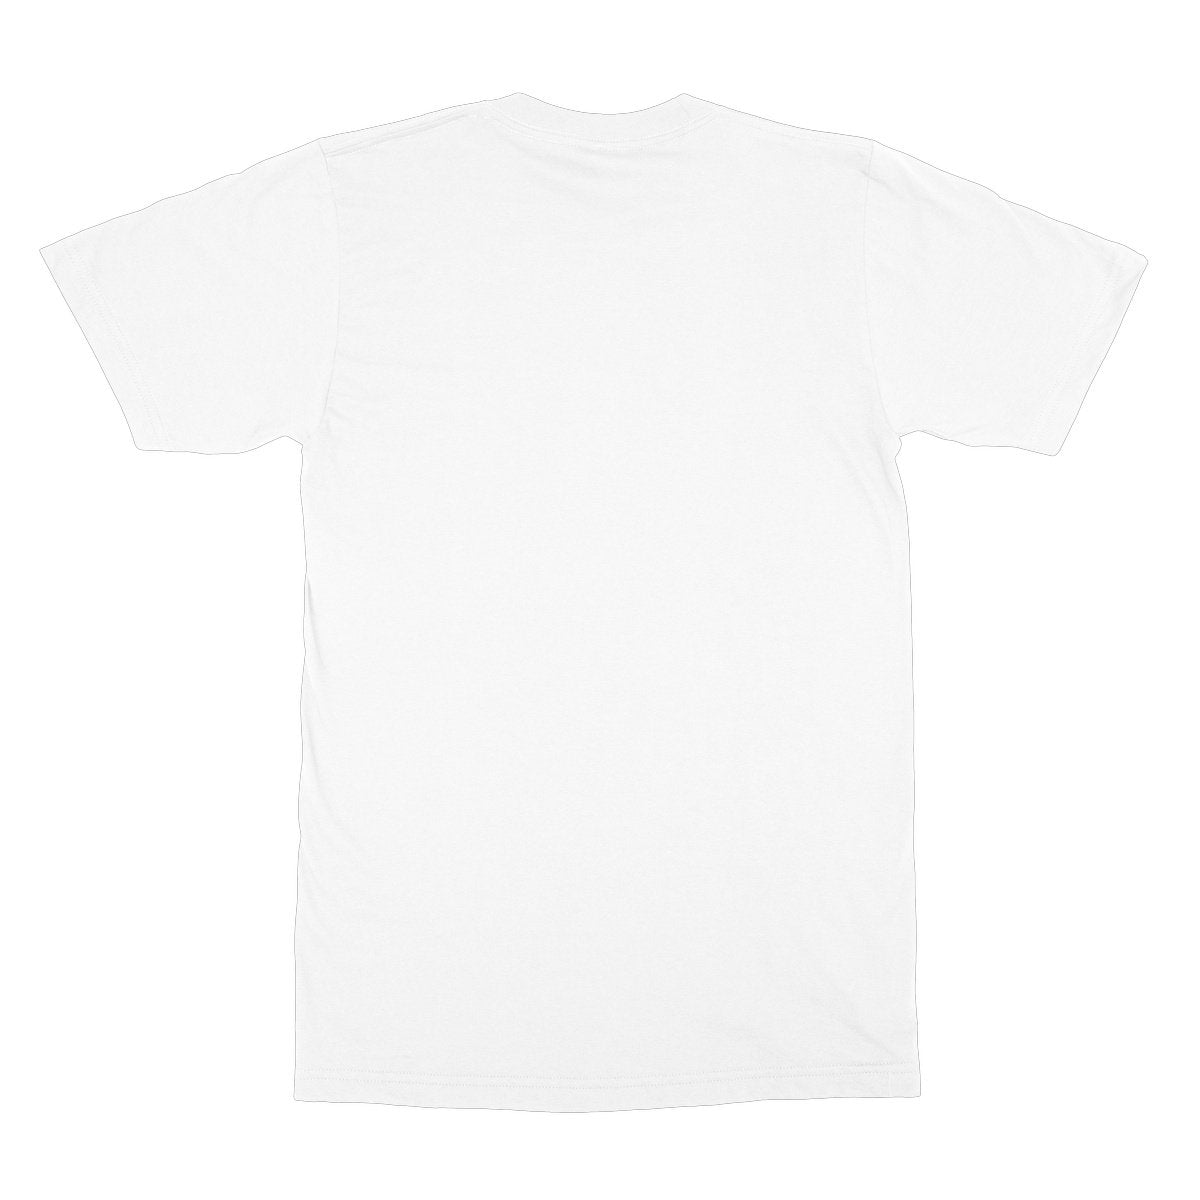 Unisex Softstyle T-Shirt - 'Hug a Dog'